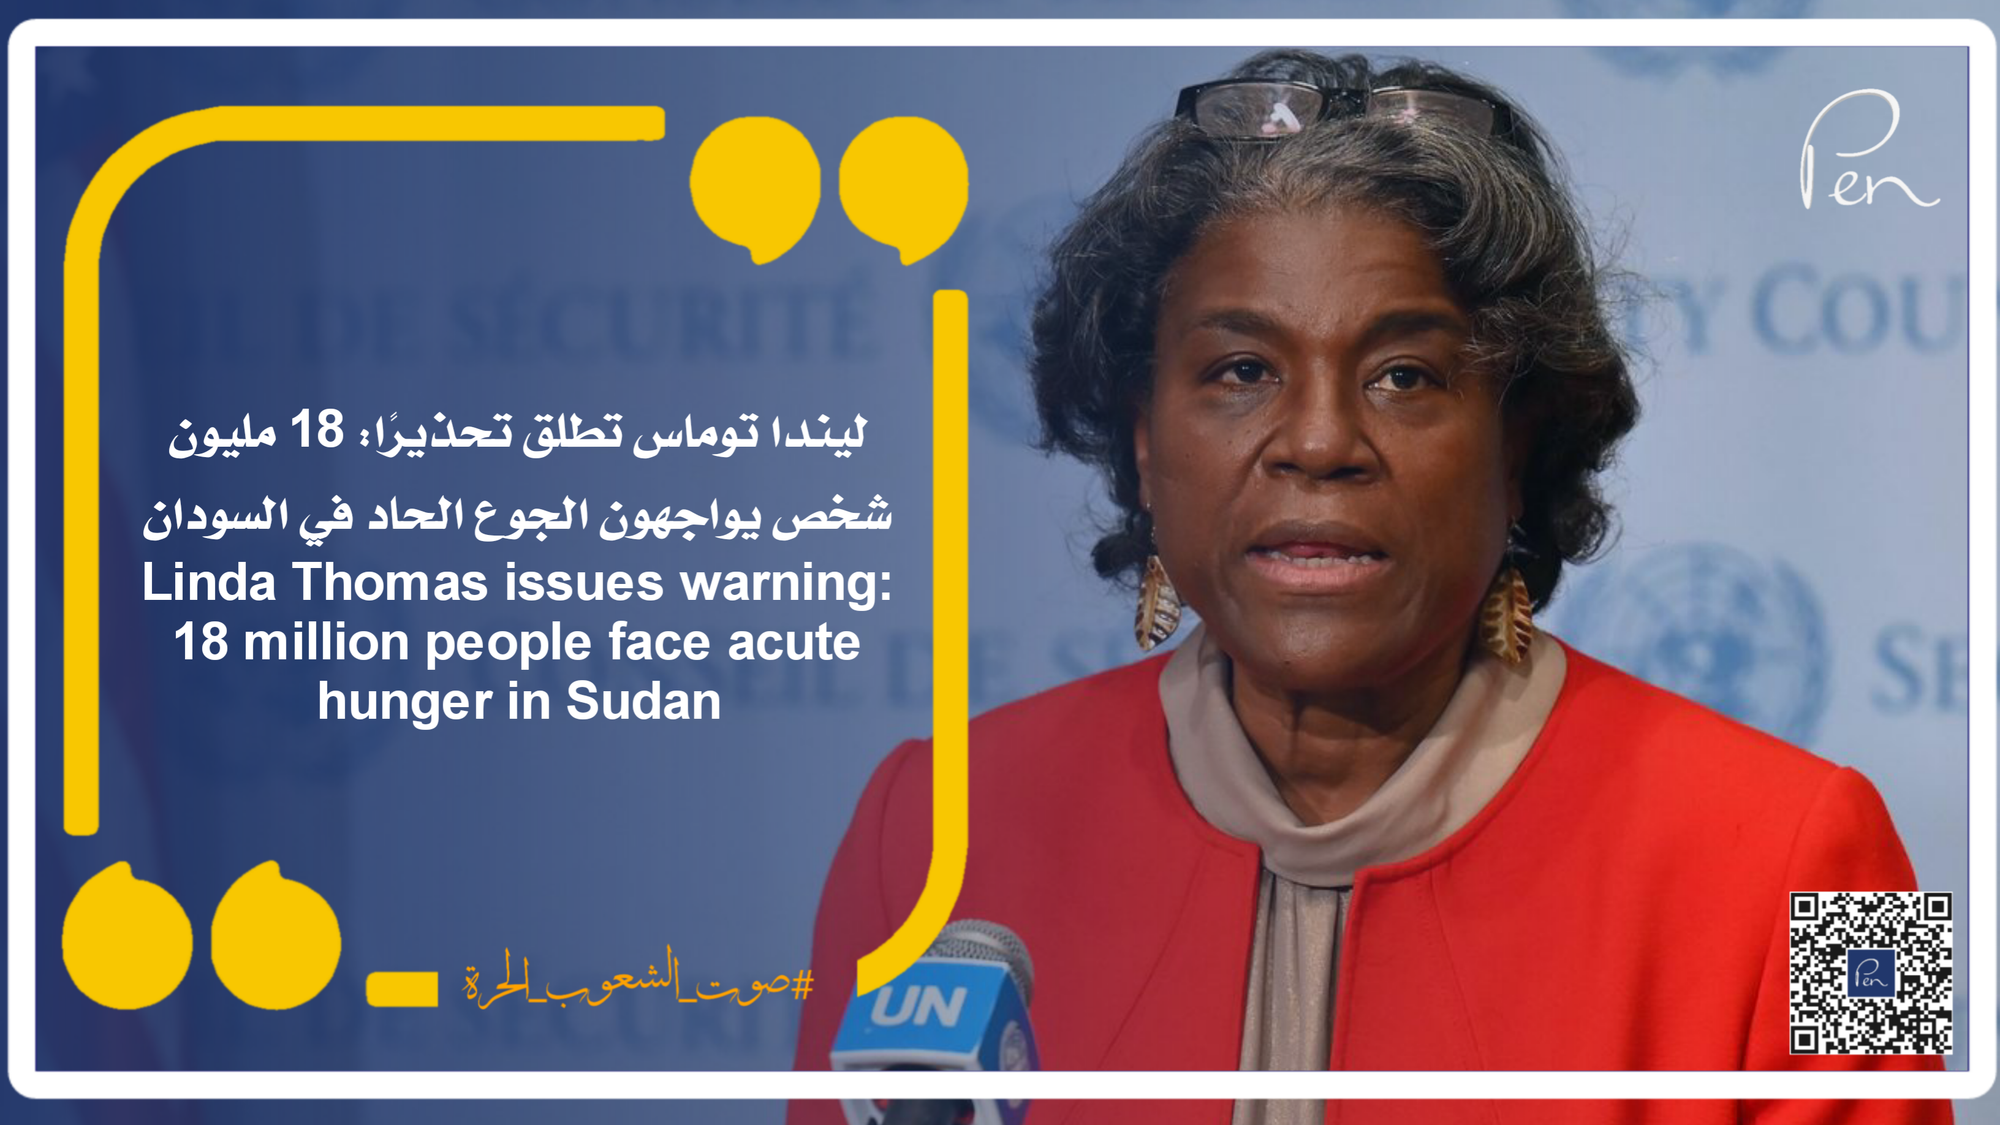 ليندا توماس تطلق تحذيرًا: 18 مليون شخص يواجهون الجوع الحاد في السودان